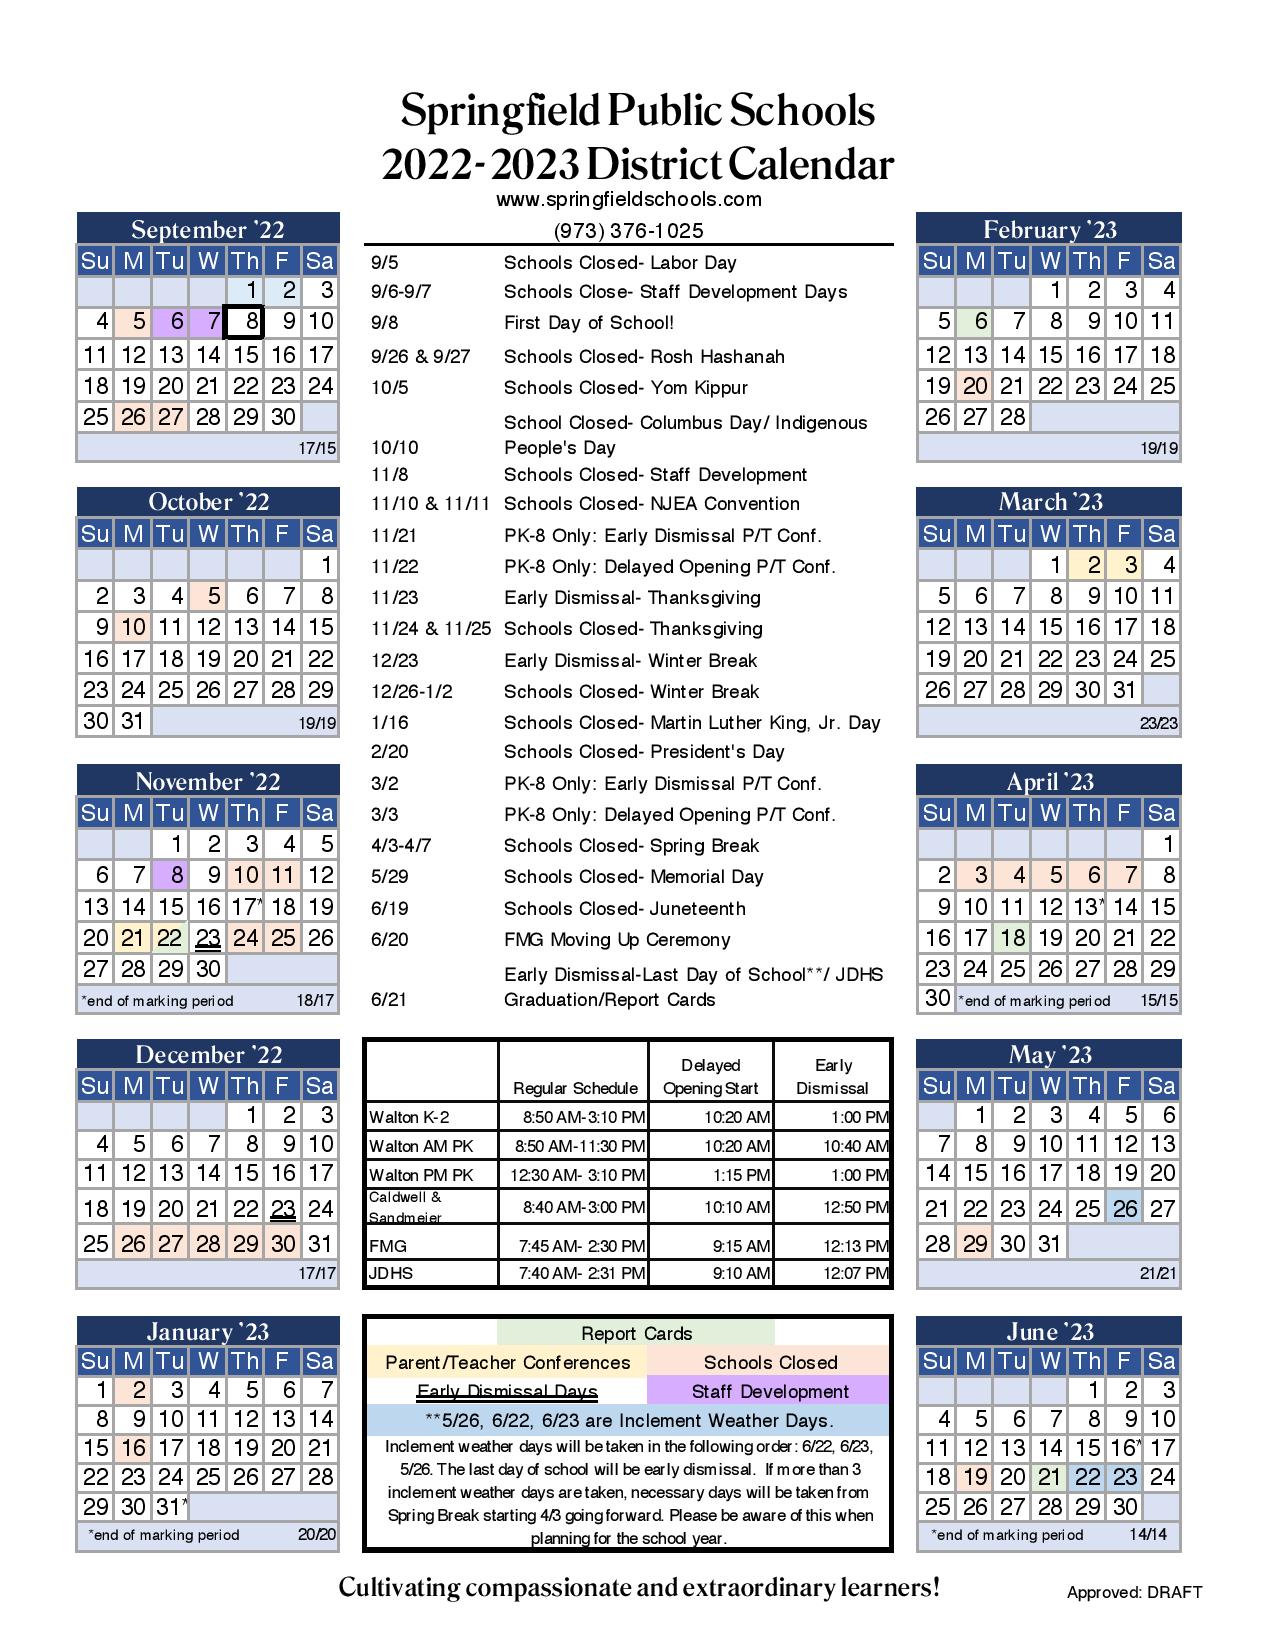 Omaha Public Schools 2023 2024 Calendar Recette 2023